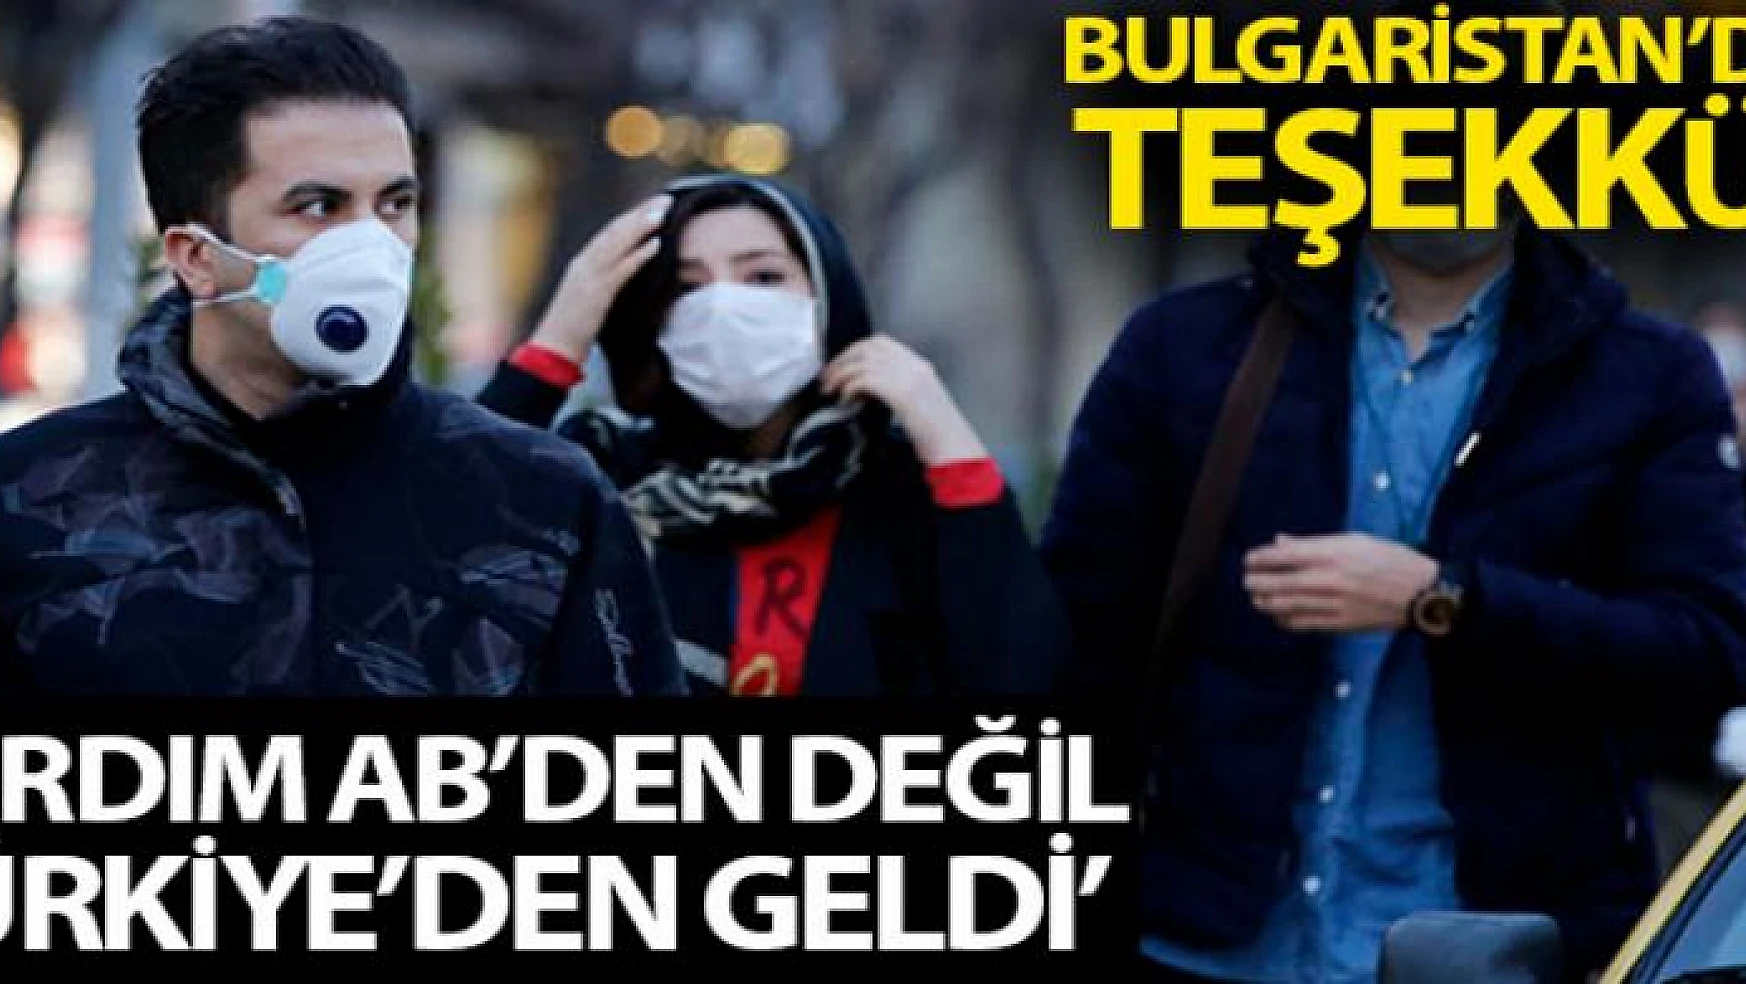 Bulgaristan: 'Yardım AB'den değil, Türkiye'den geldi'